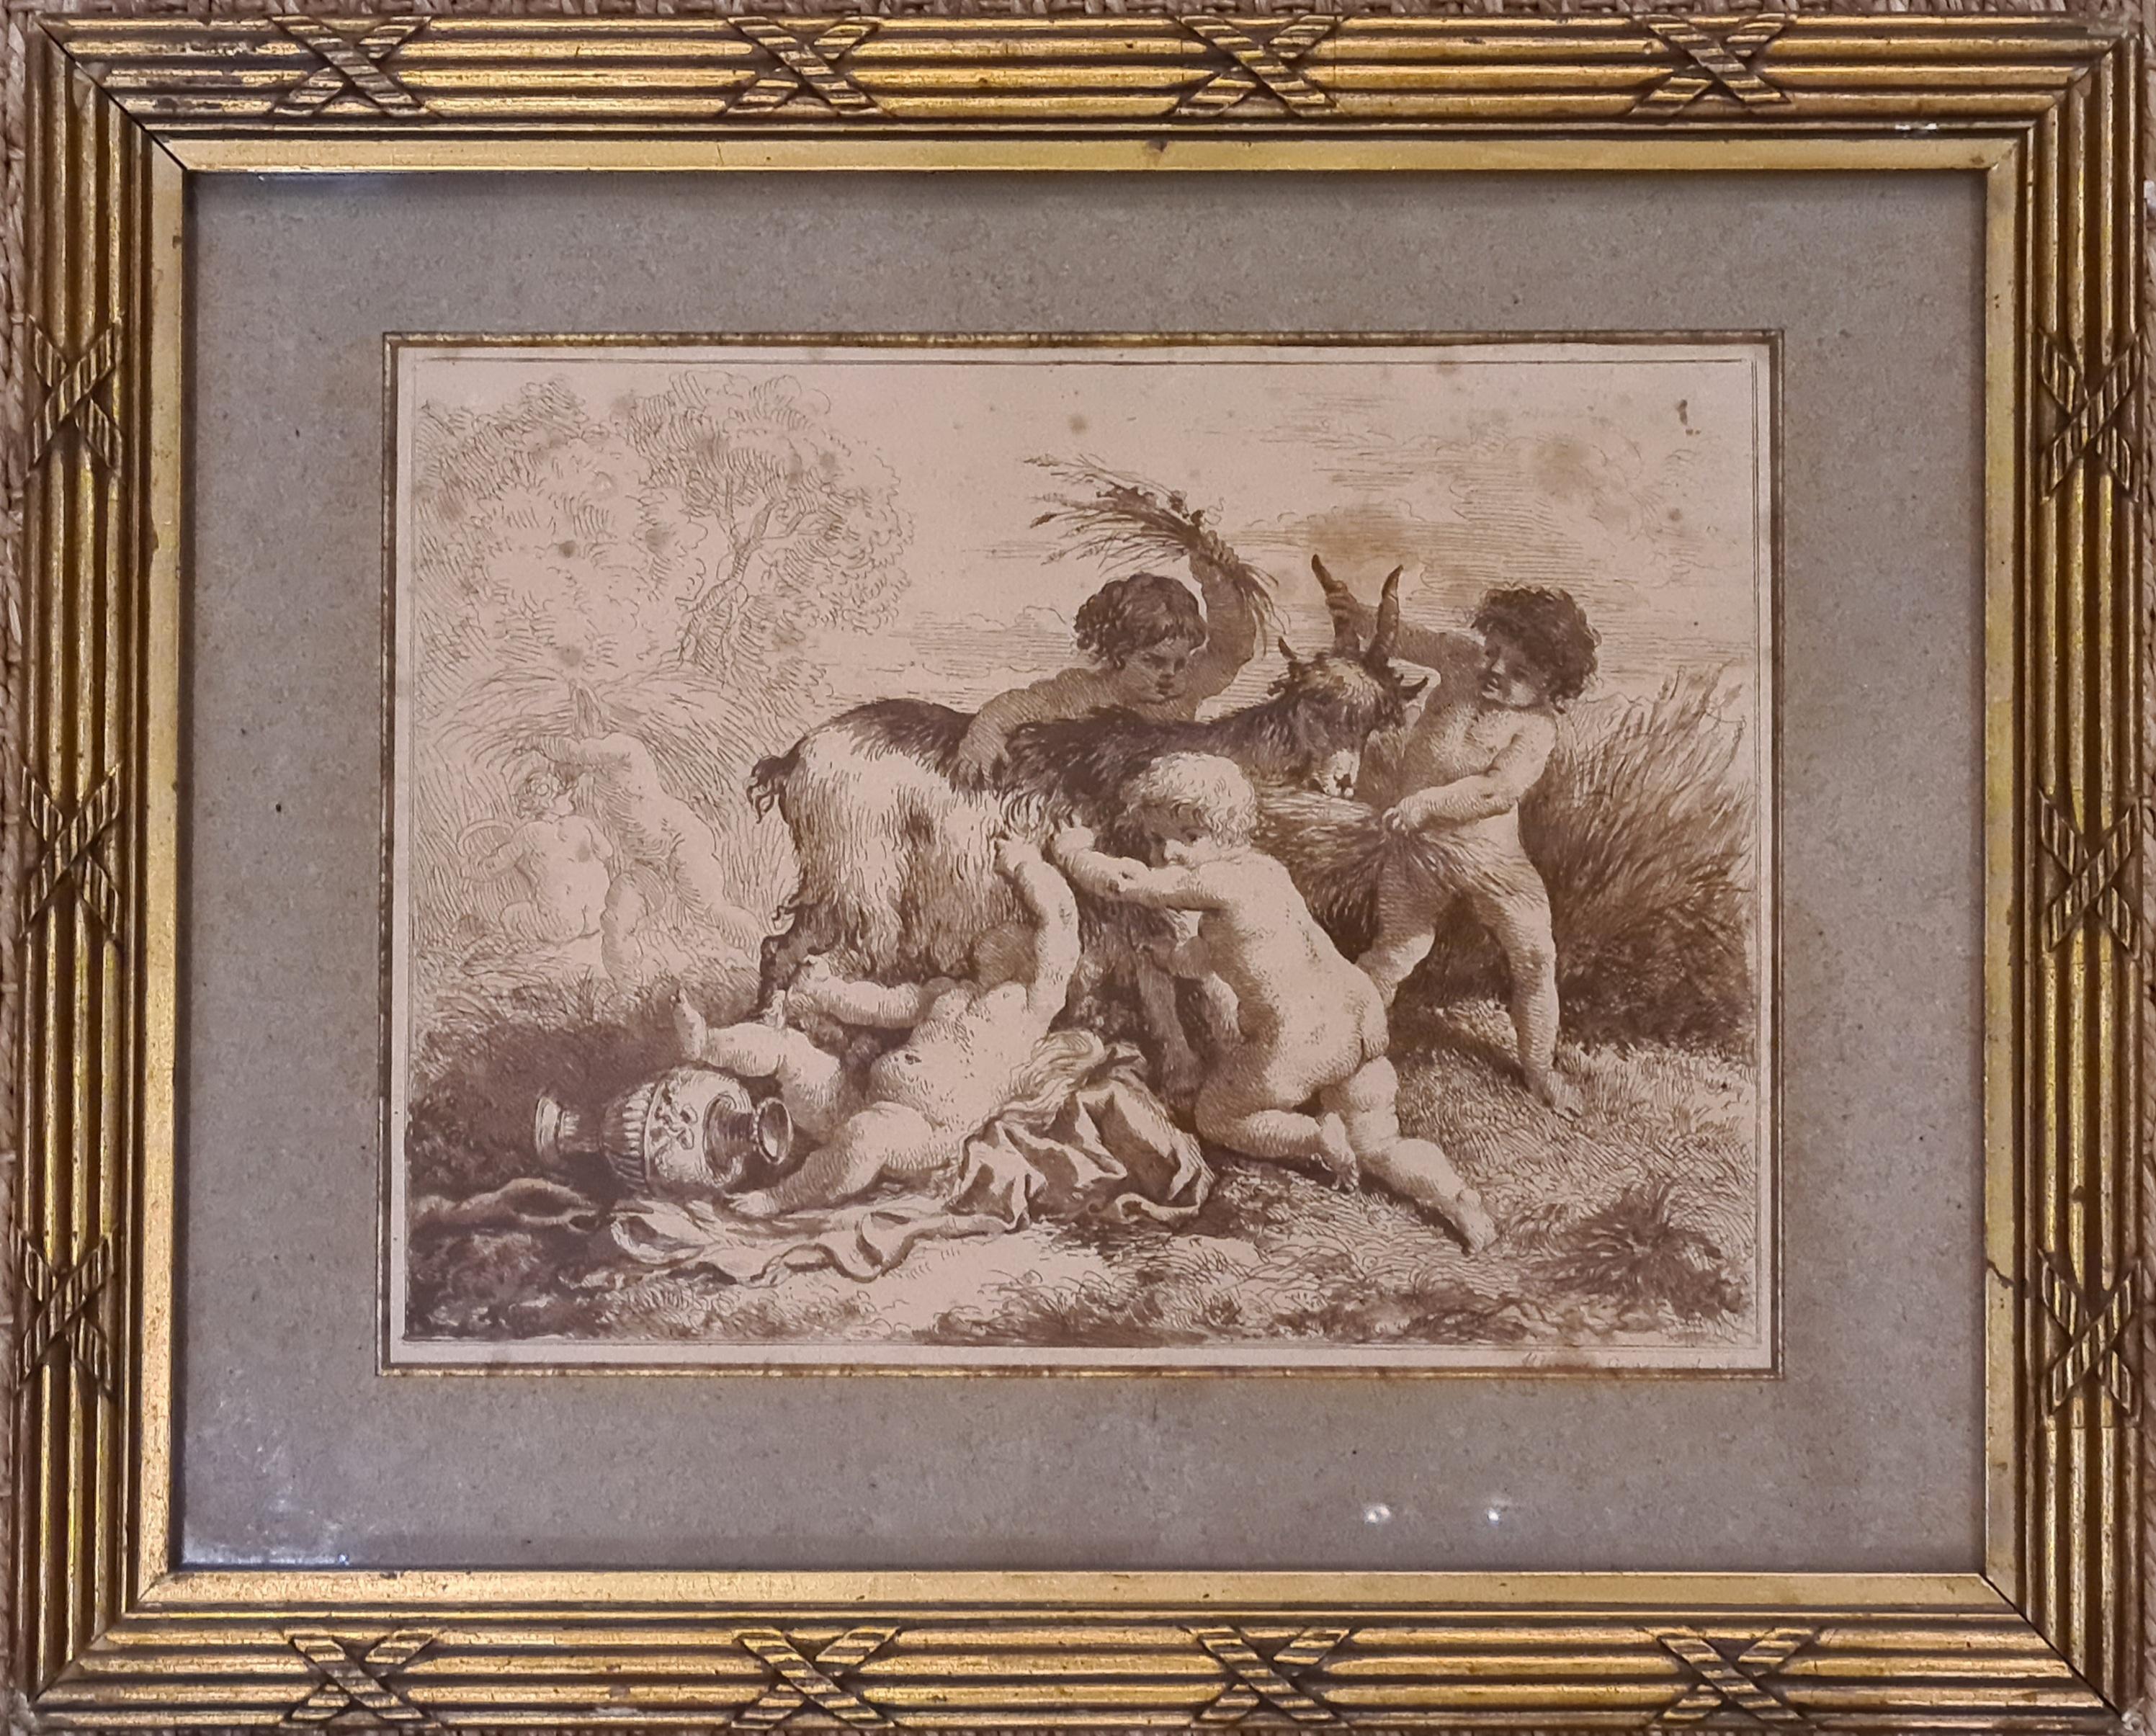 La moisson, chérubins se promenant avec une chèvre, gravure encadrée du 18ème siècle